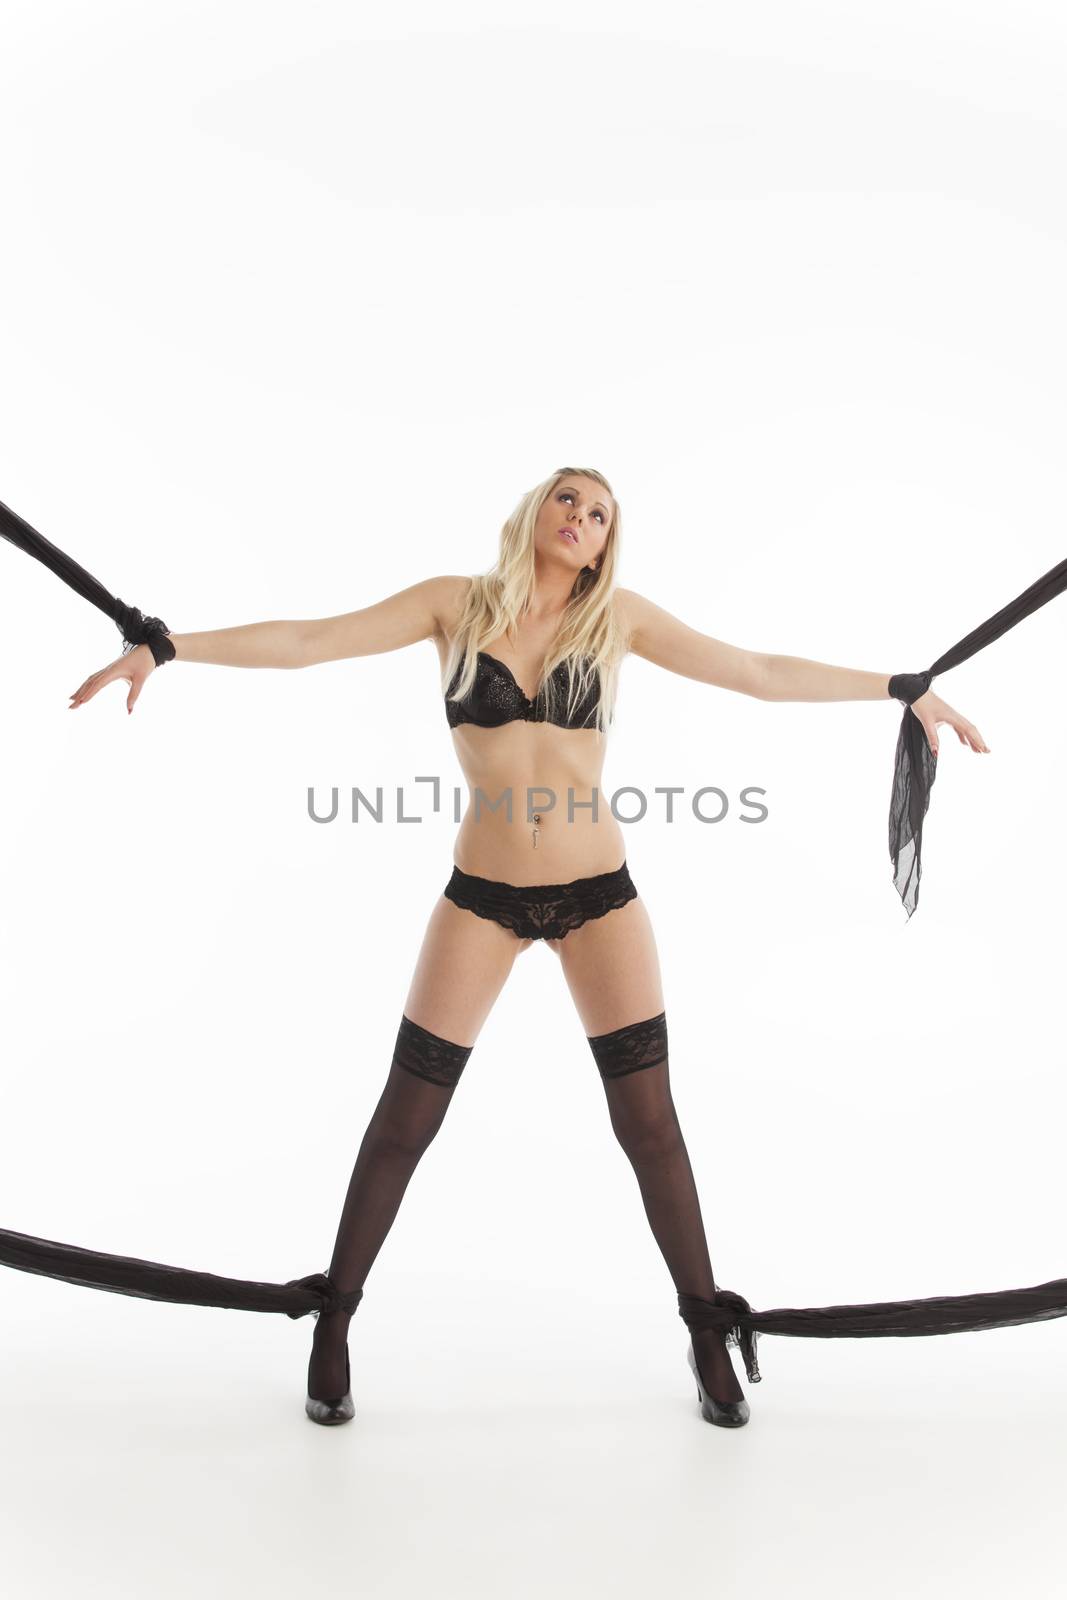 bound blonde woman in underwear by bernjuer